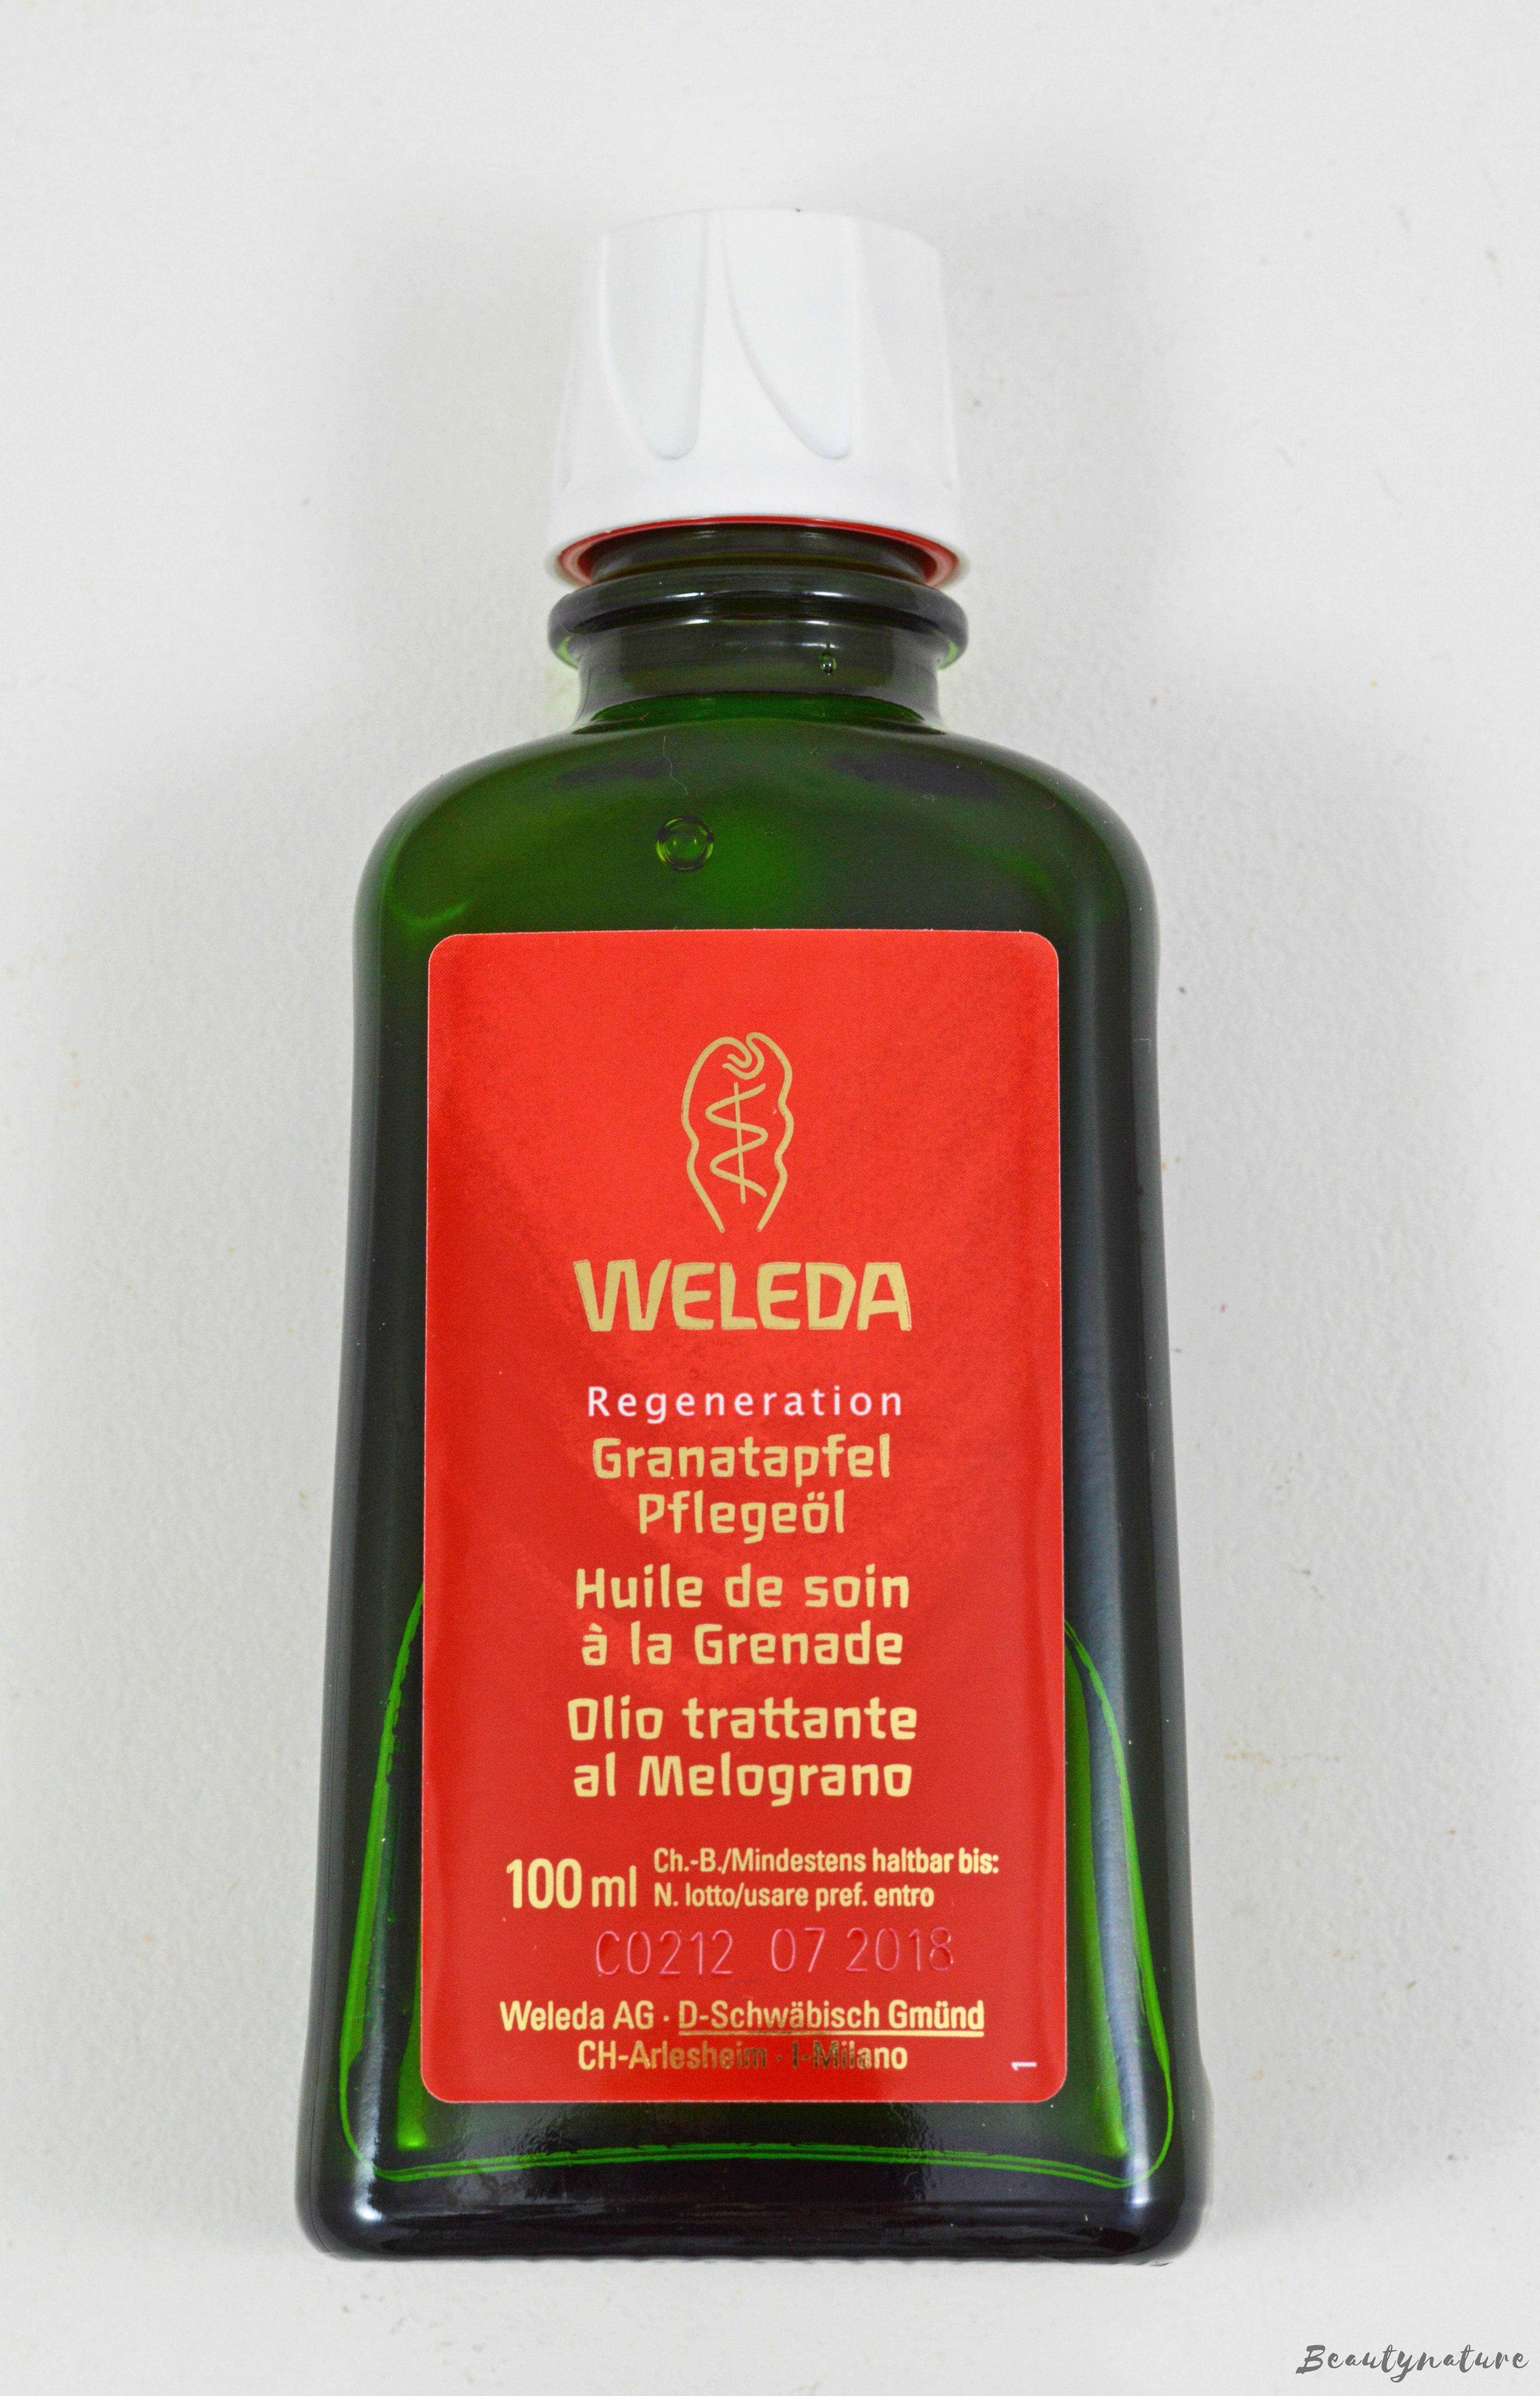 Weleda - Granatapfel Pflegeöl